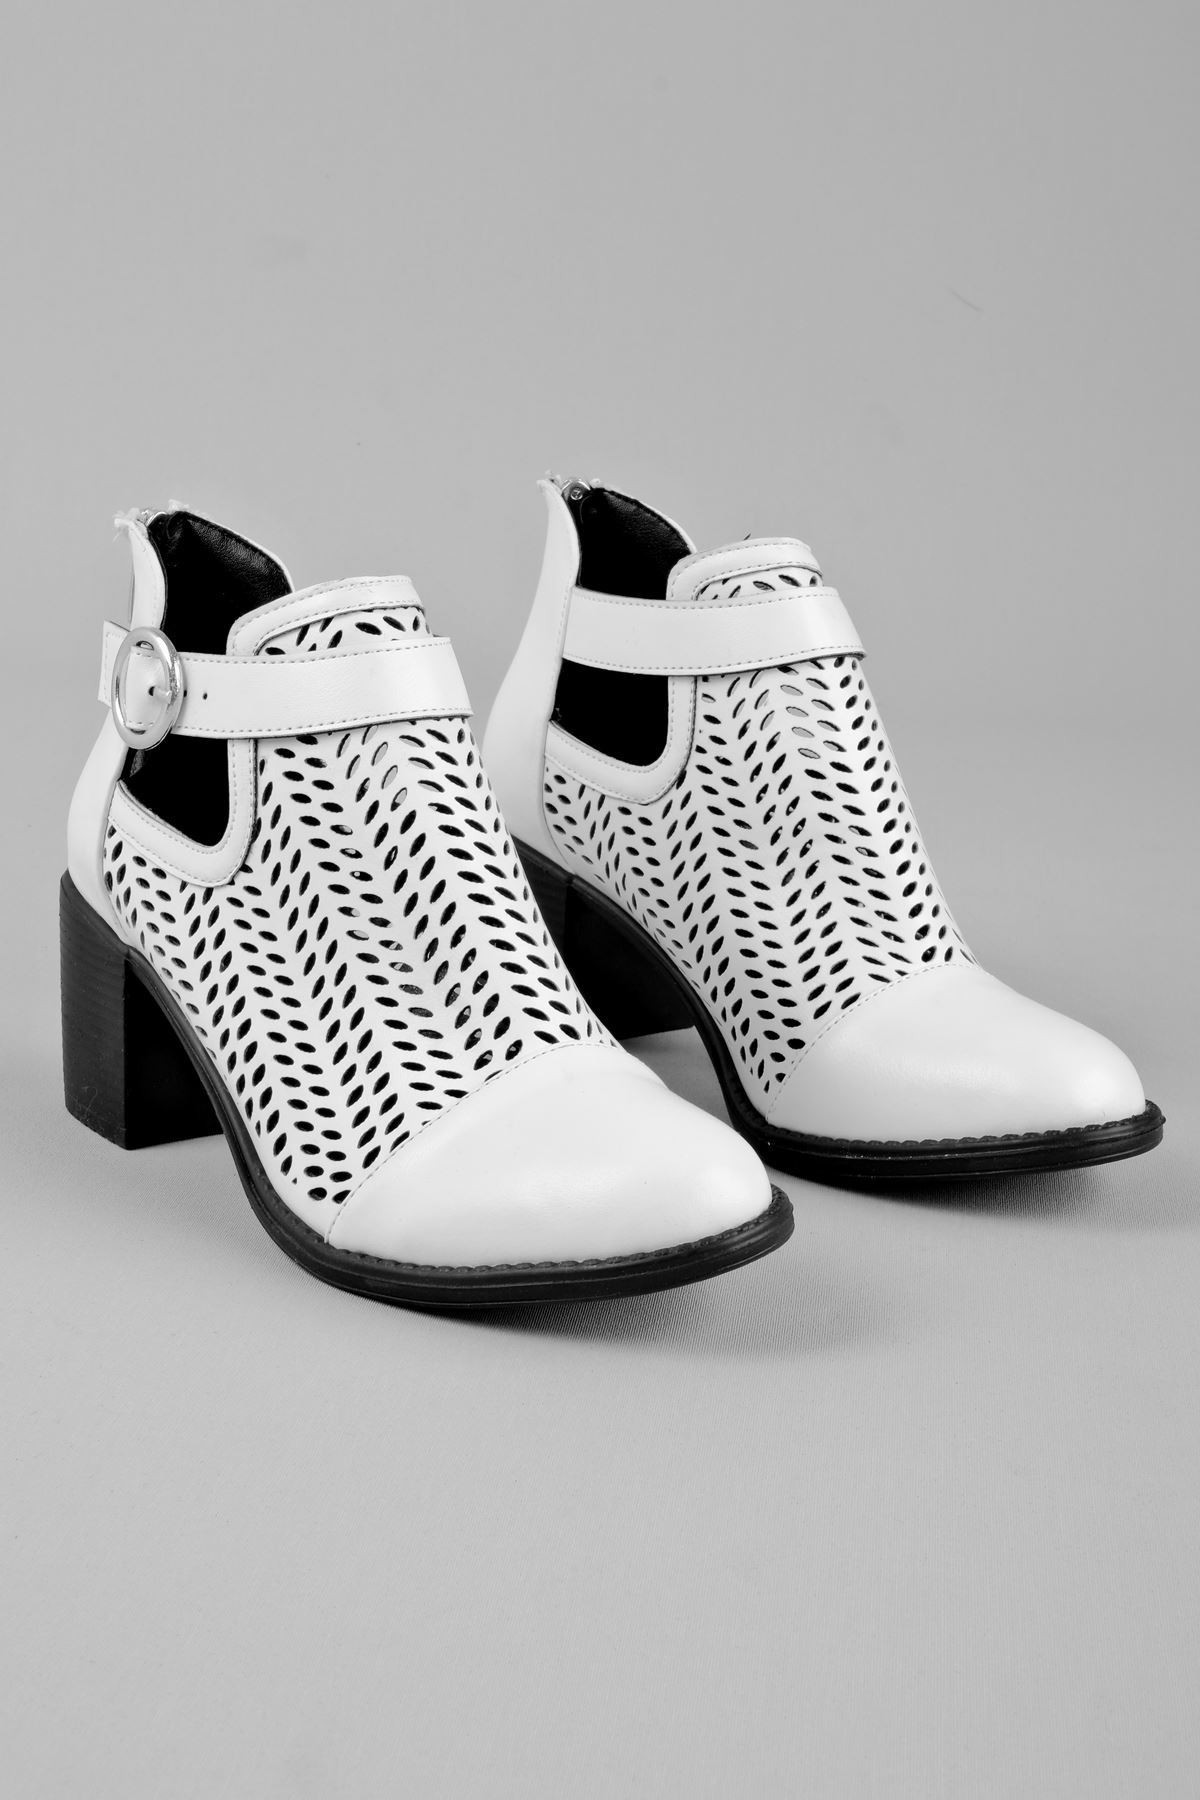 Adele Kadın Yazlık Delikli Bot Topuklu Ayakkabı (B2236) - Beyaz